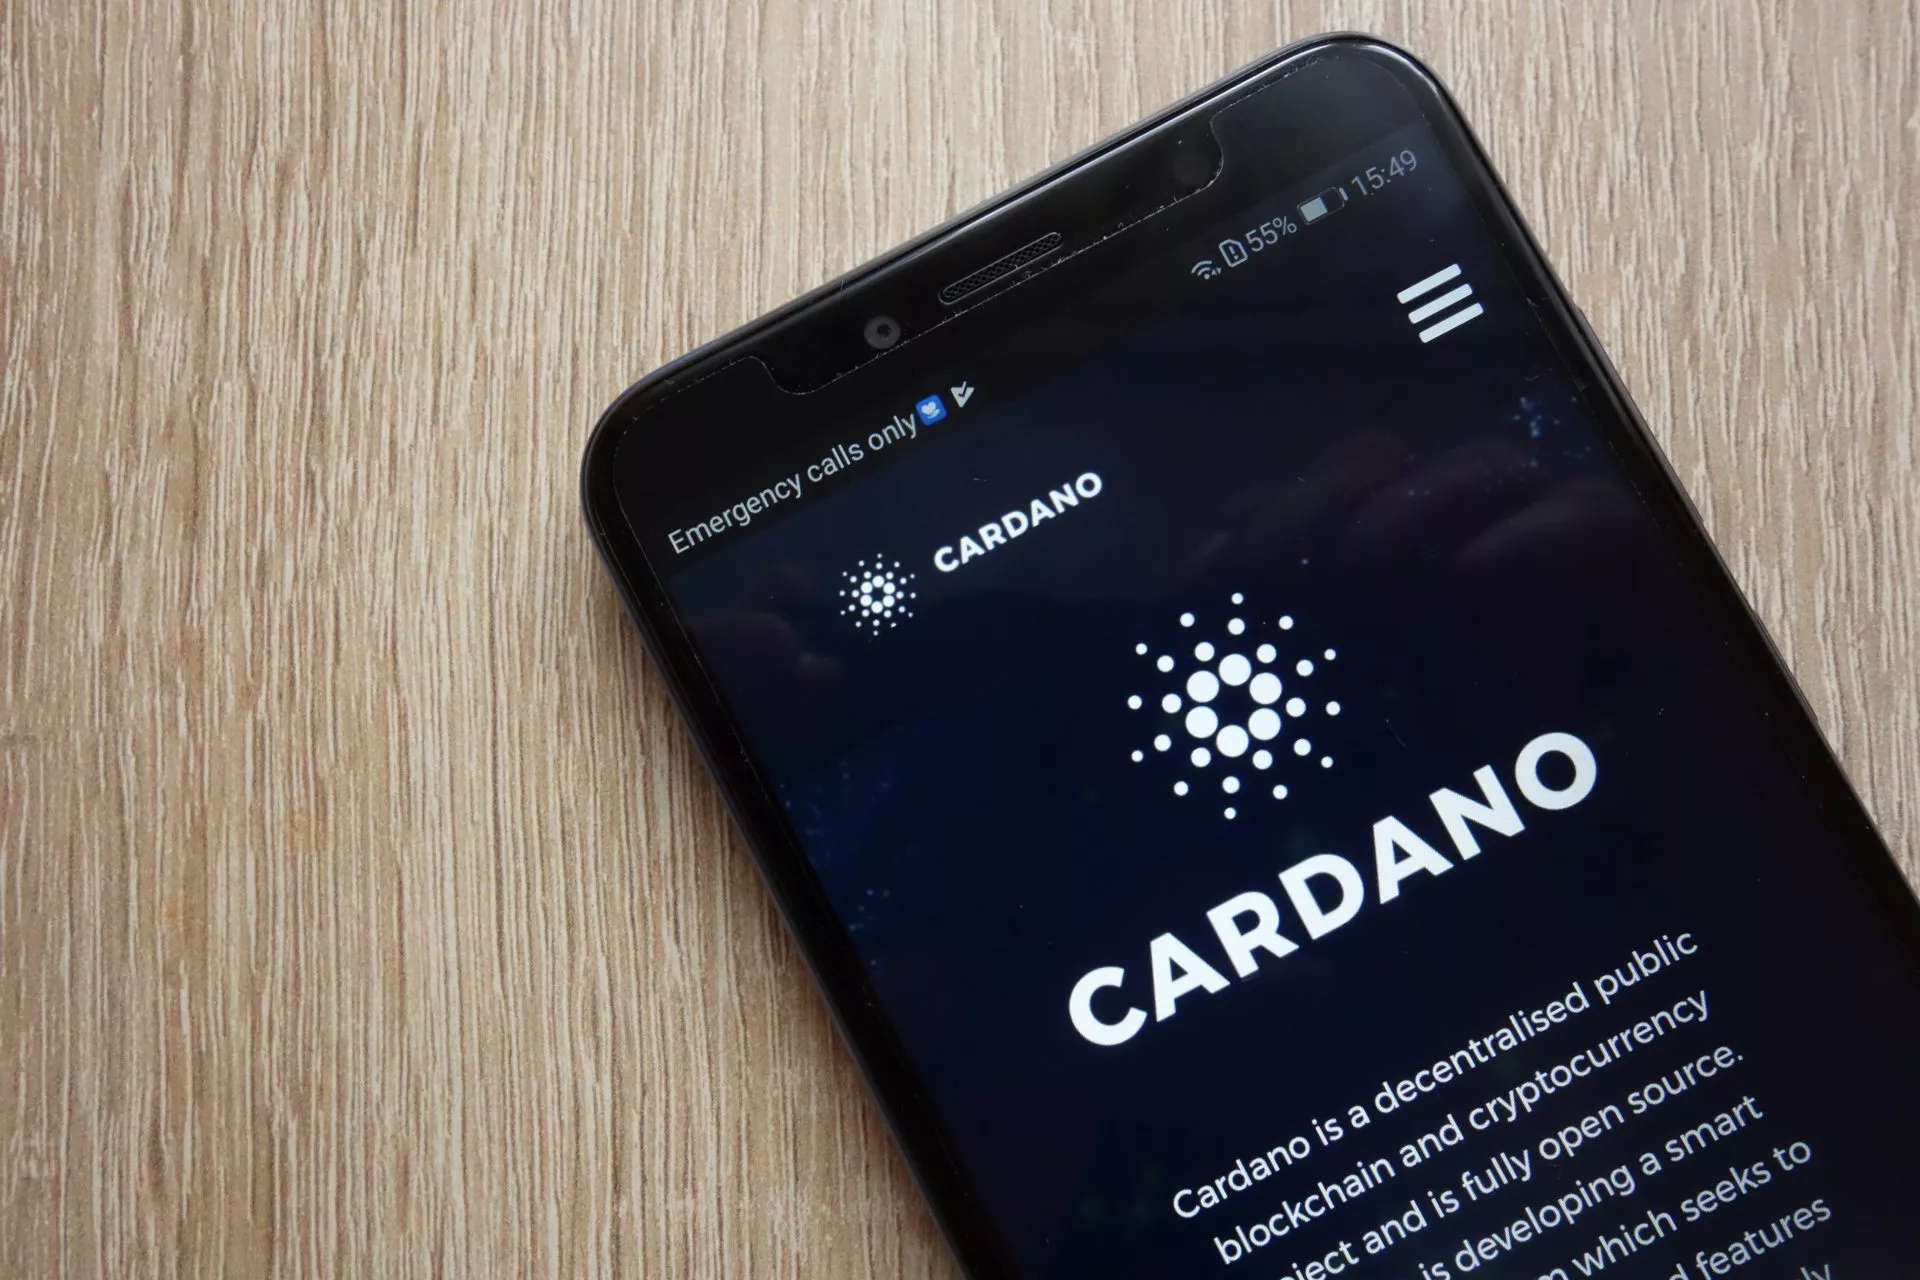 Cardano’s volgende upgrade introduceert smart contract ondersteuning